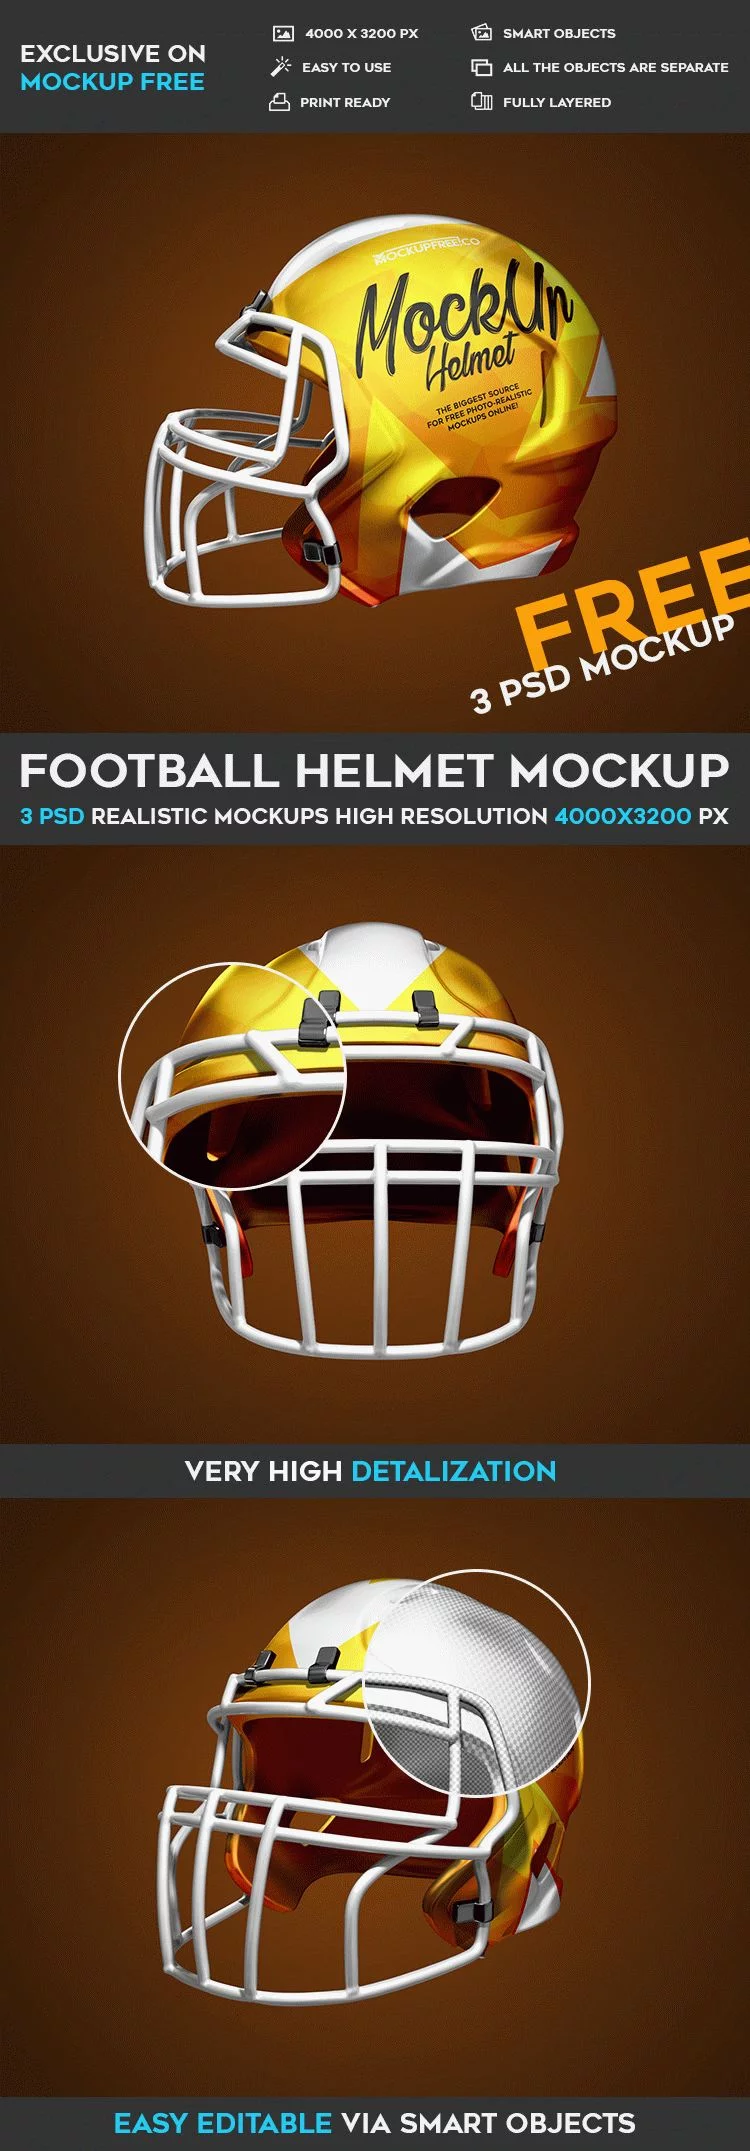 Football Helmet – 3 Free PSD Mockups